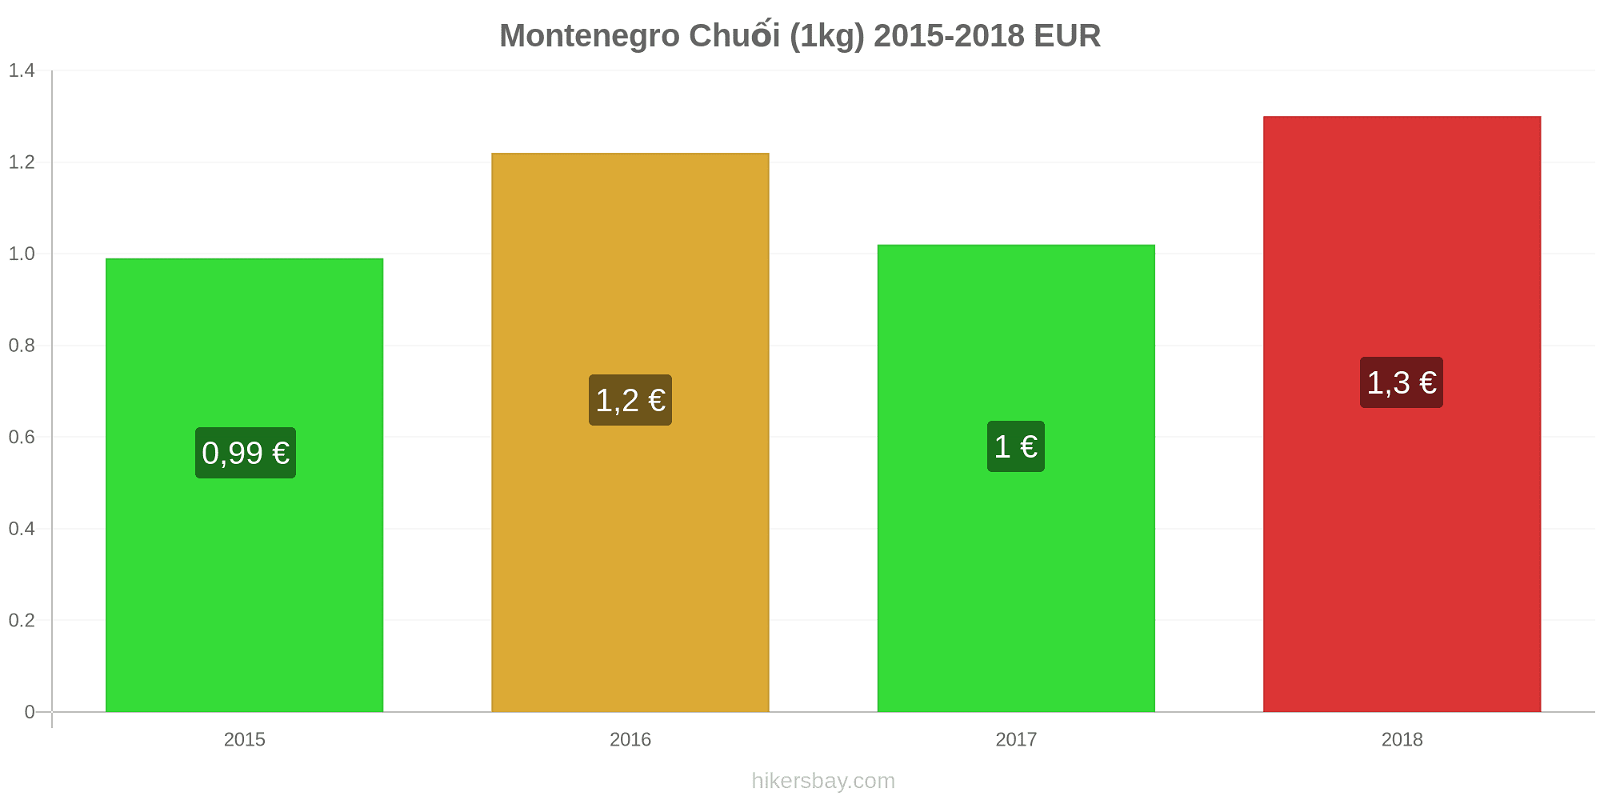 Montenegro thay đổi giá cả Chuối (1kg) hikersbay.com